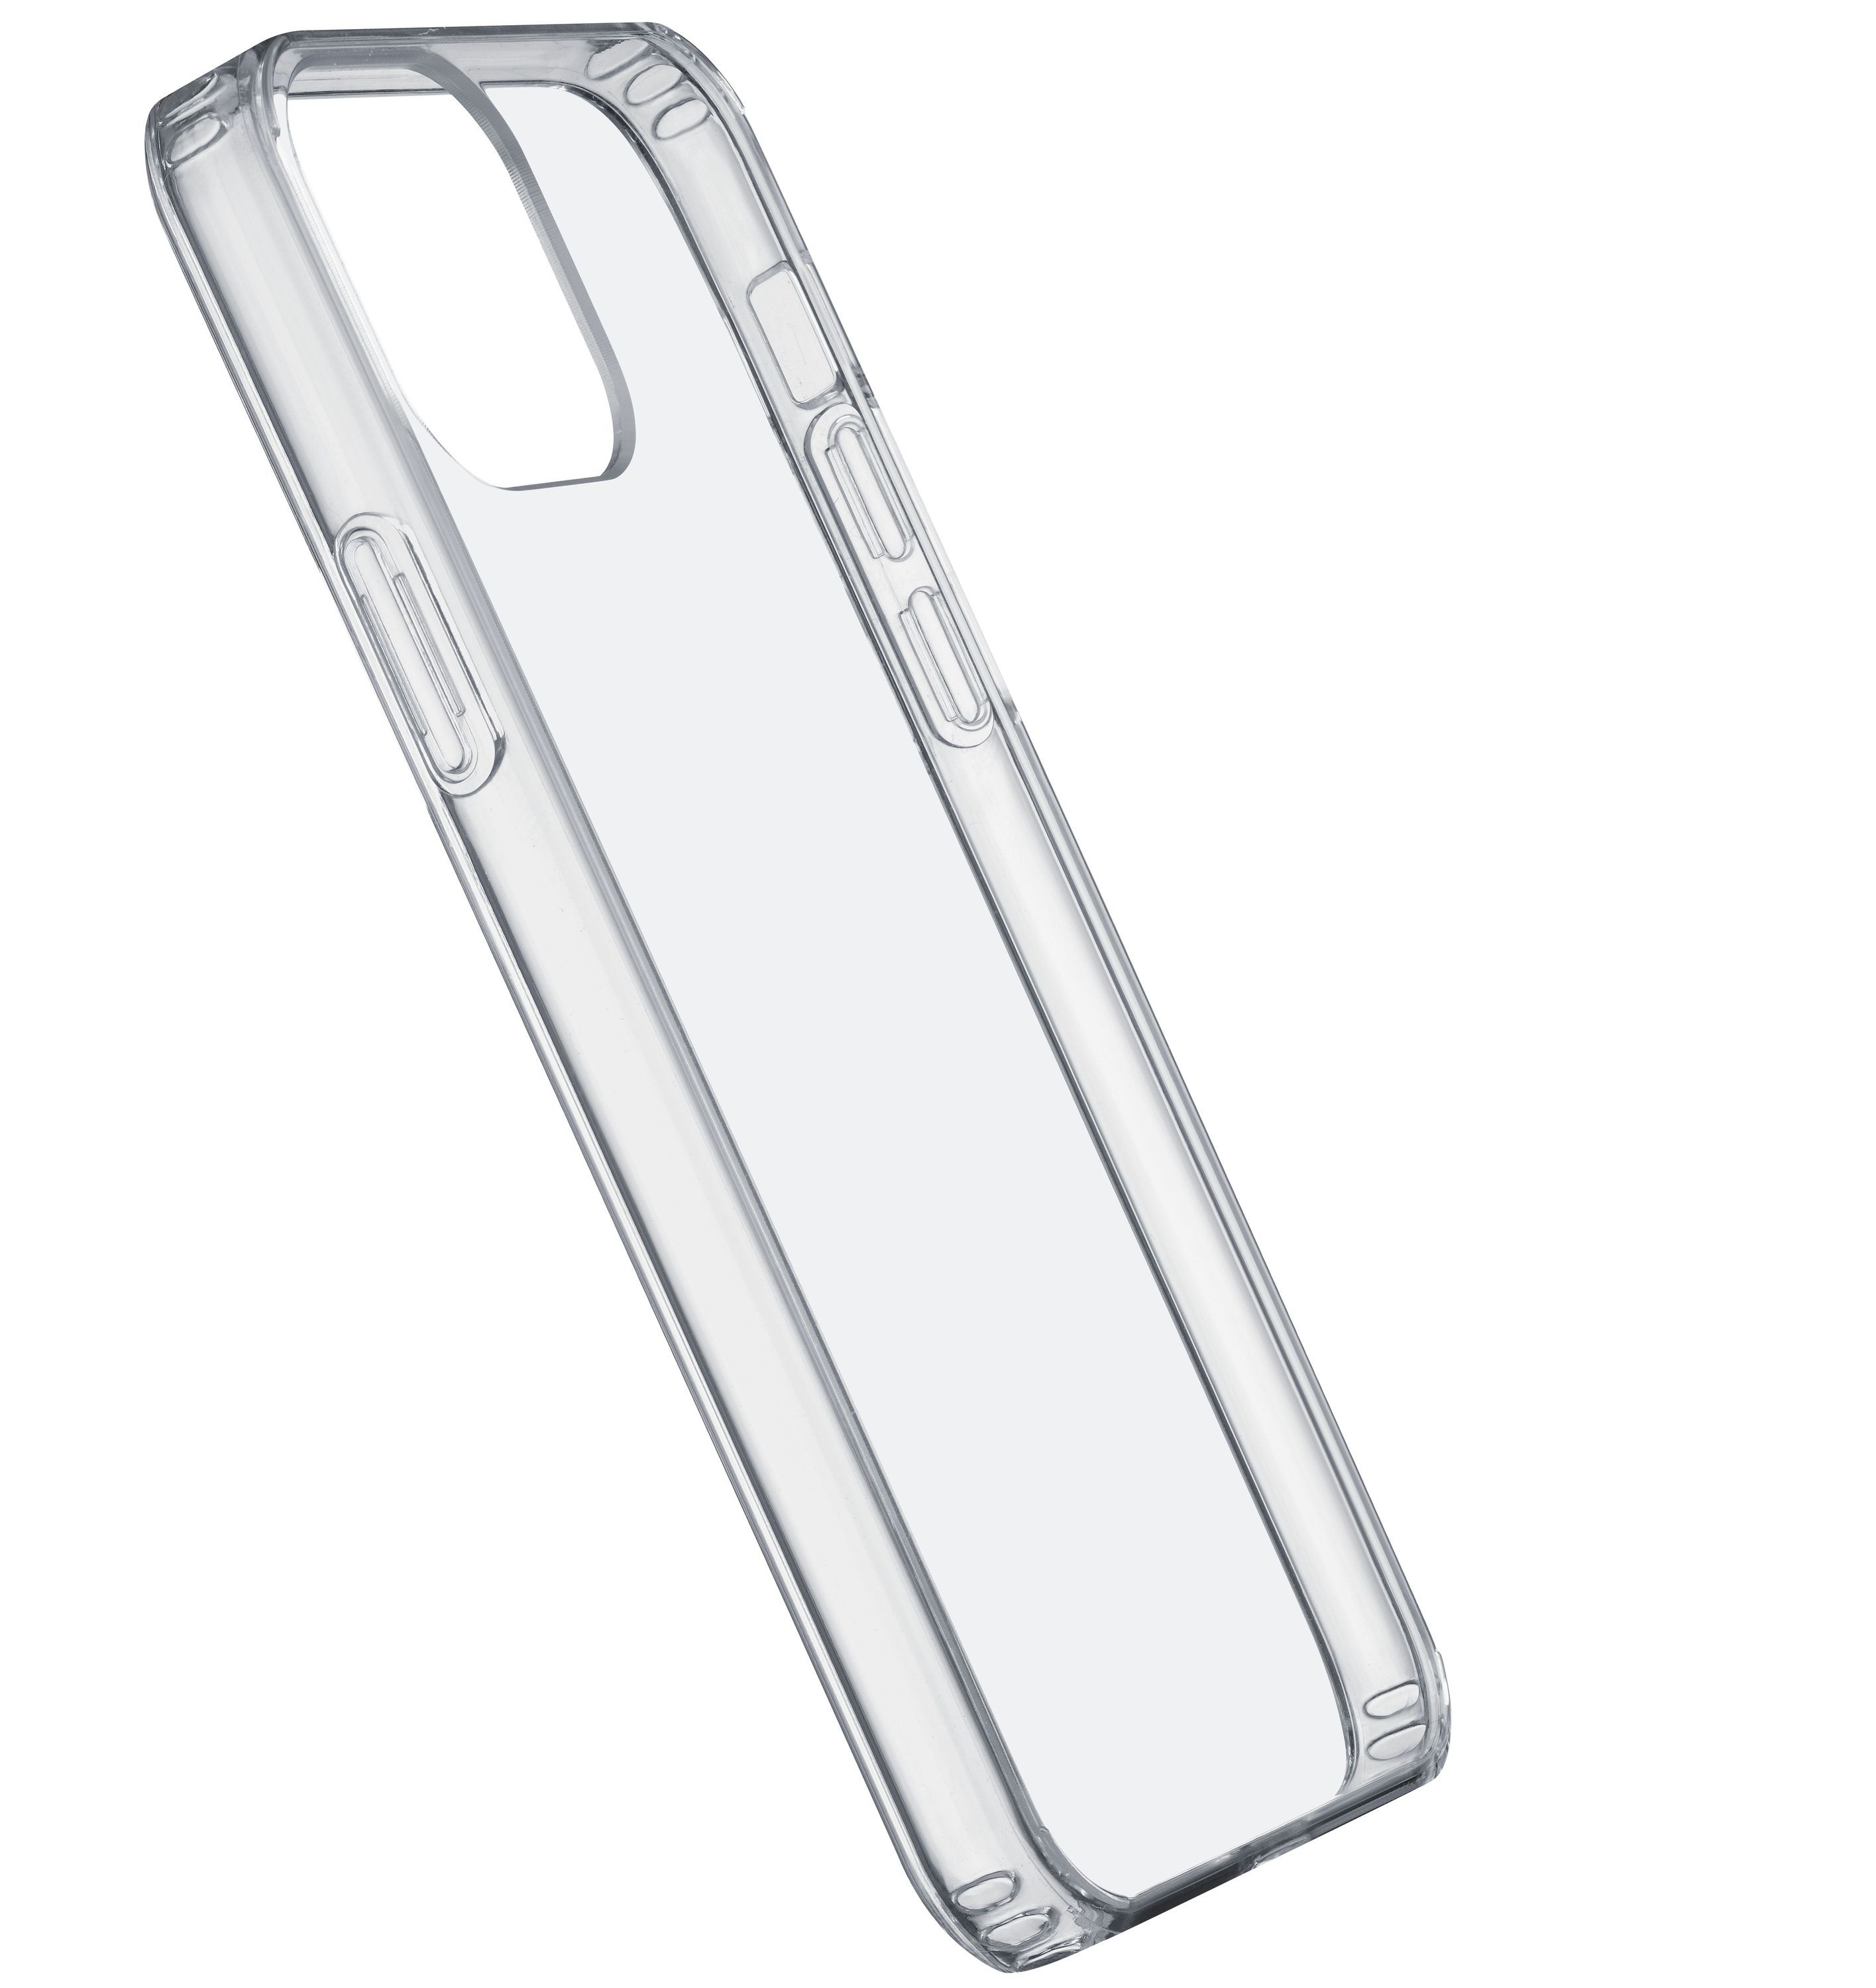 Zadní kryt s ochranným rámečkem Clear Duo pro iPhone 12 mini, transparentní